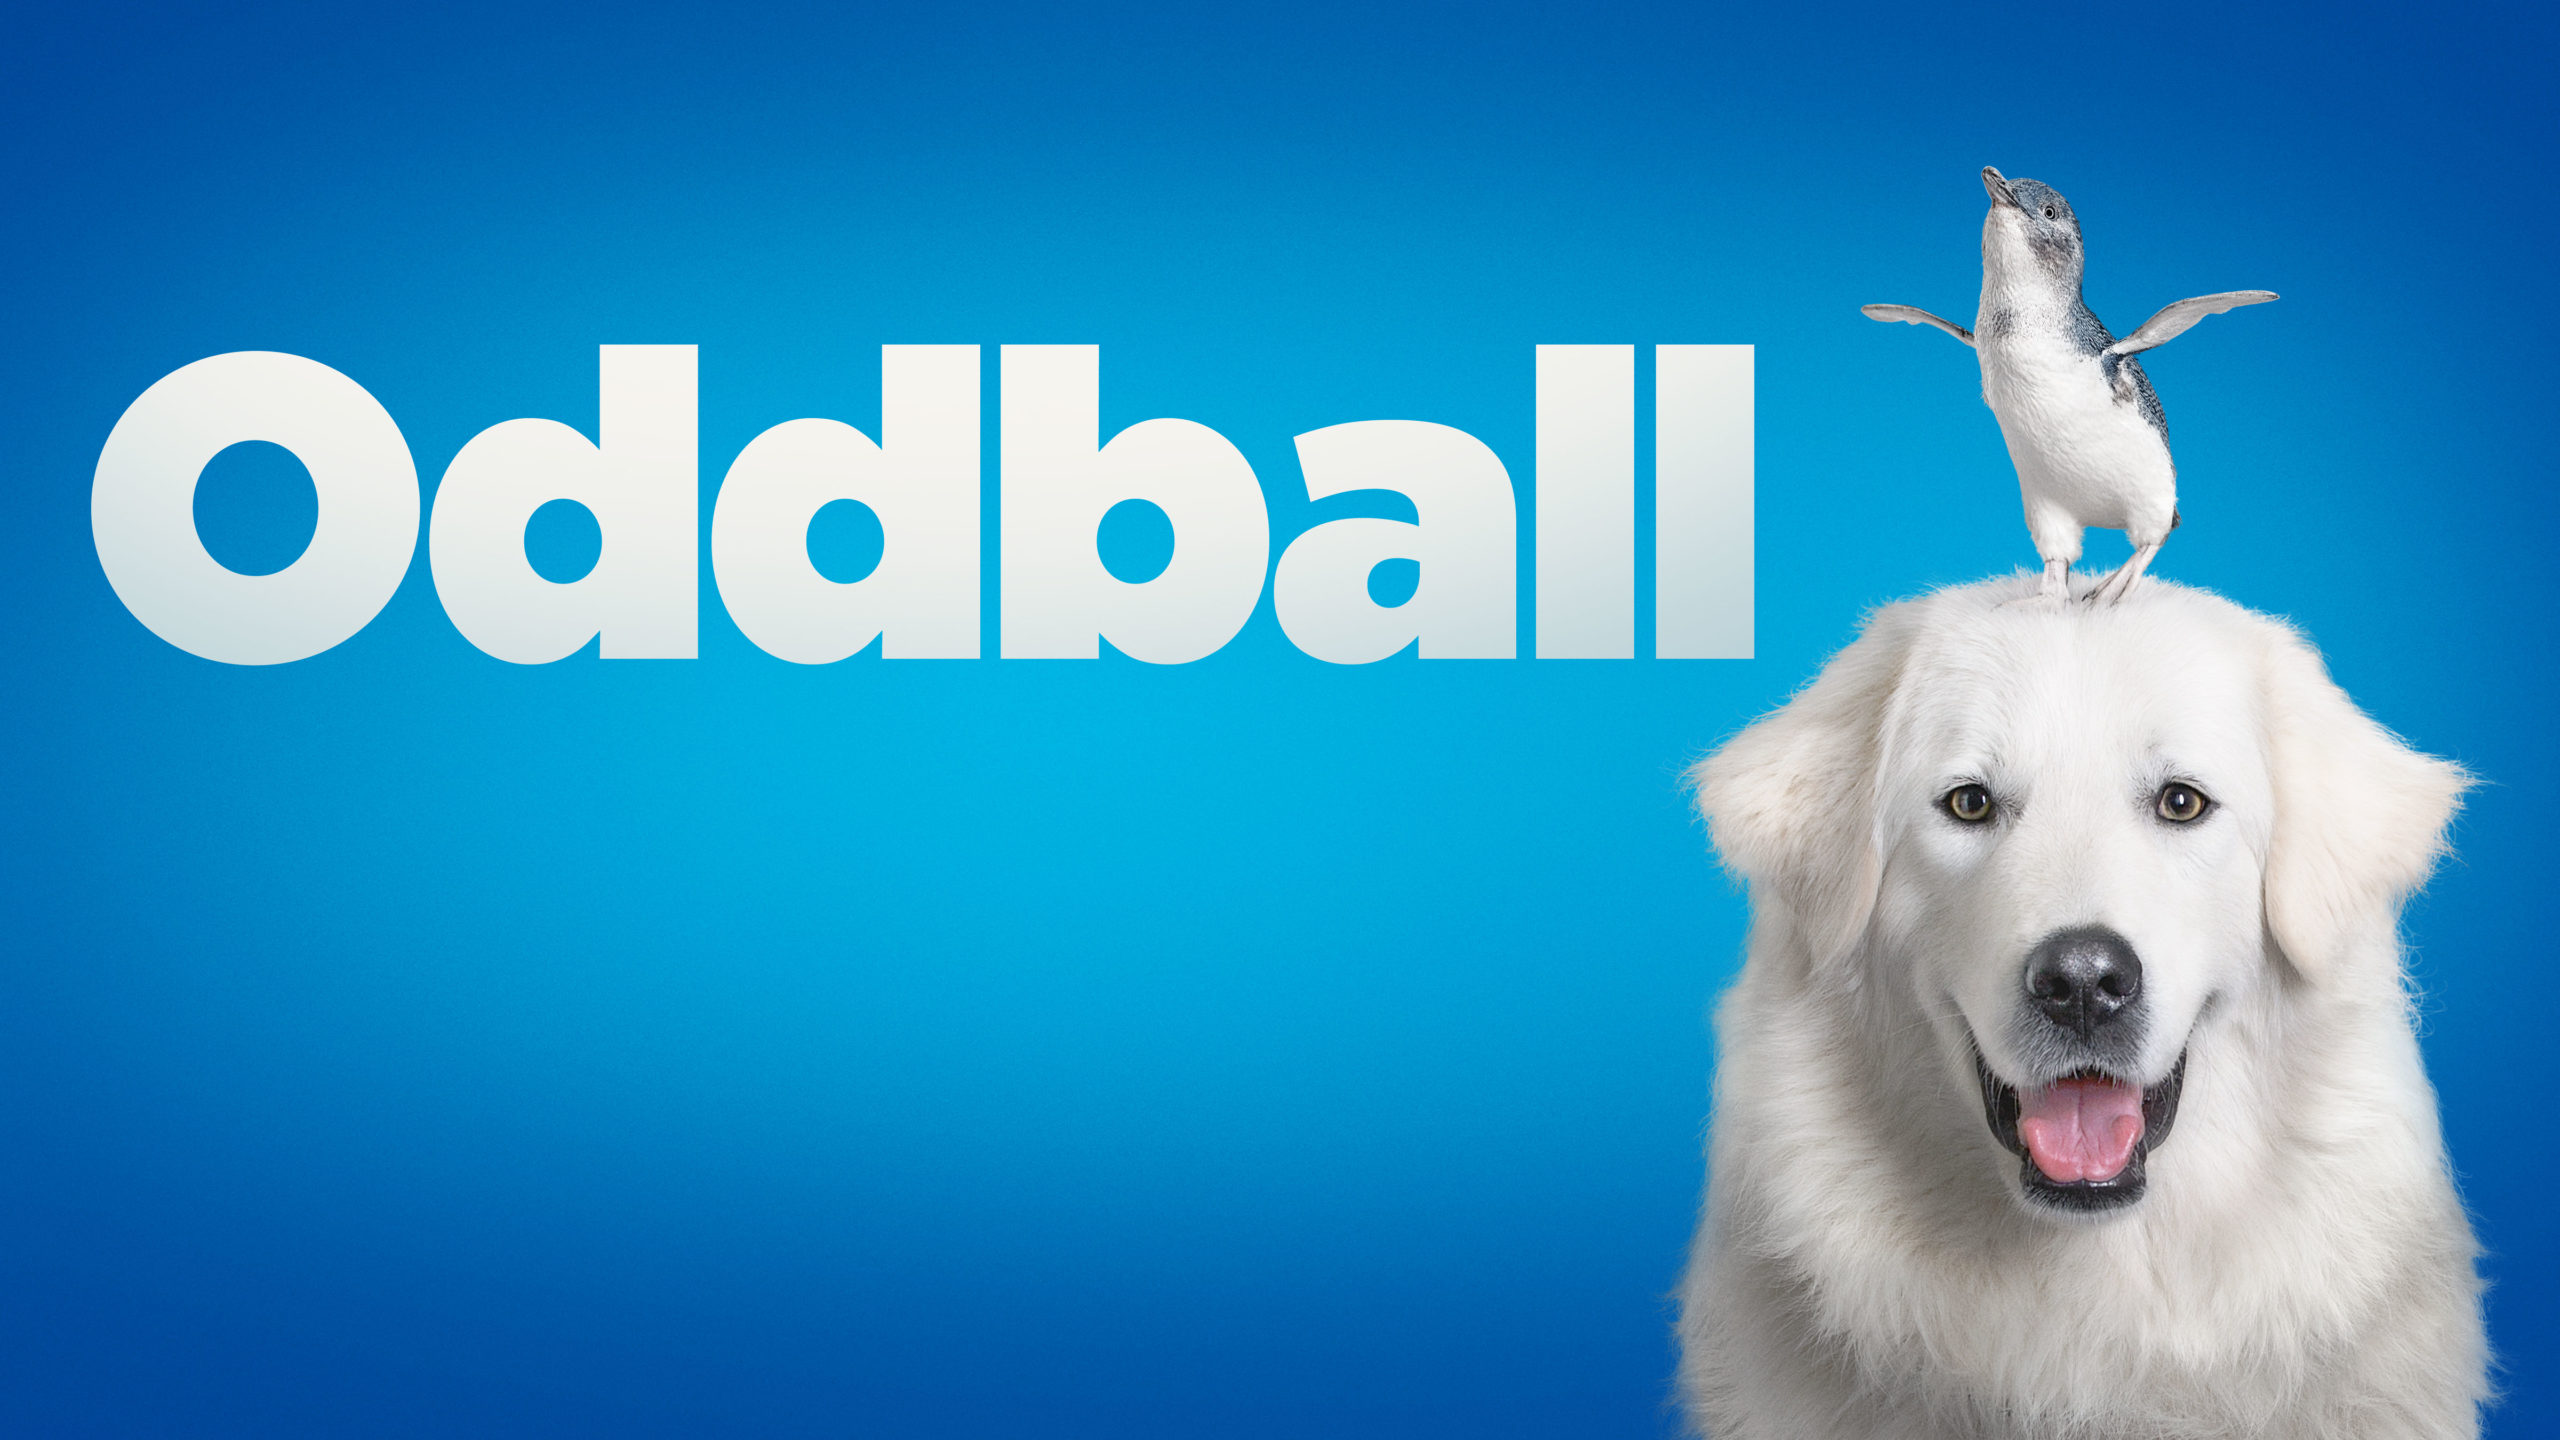 Oddball: The Movie – WTFN